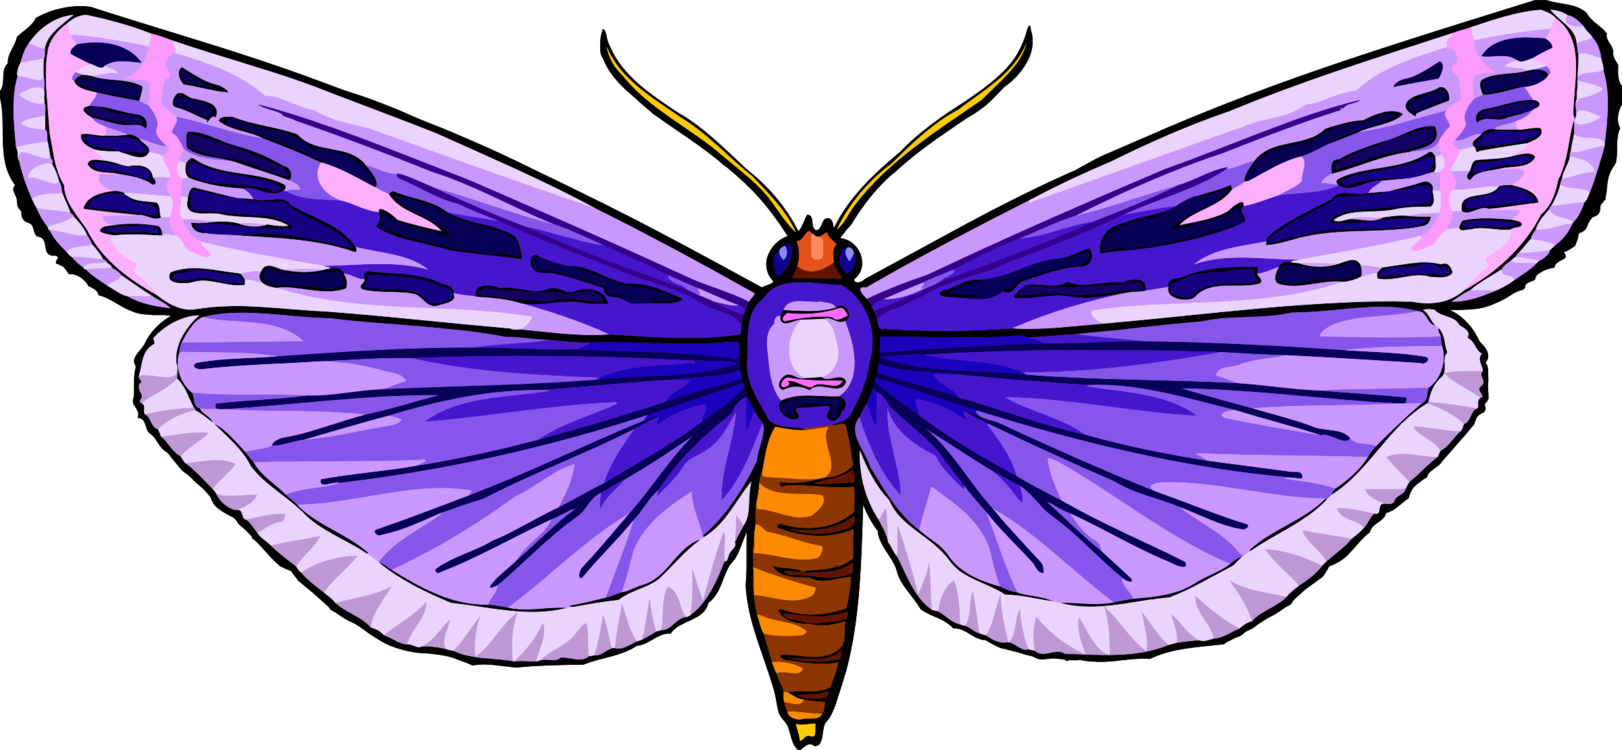 Butterfly,Symmetry,Purple